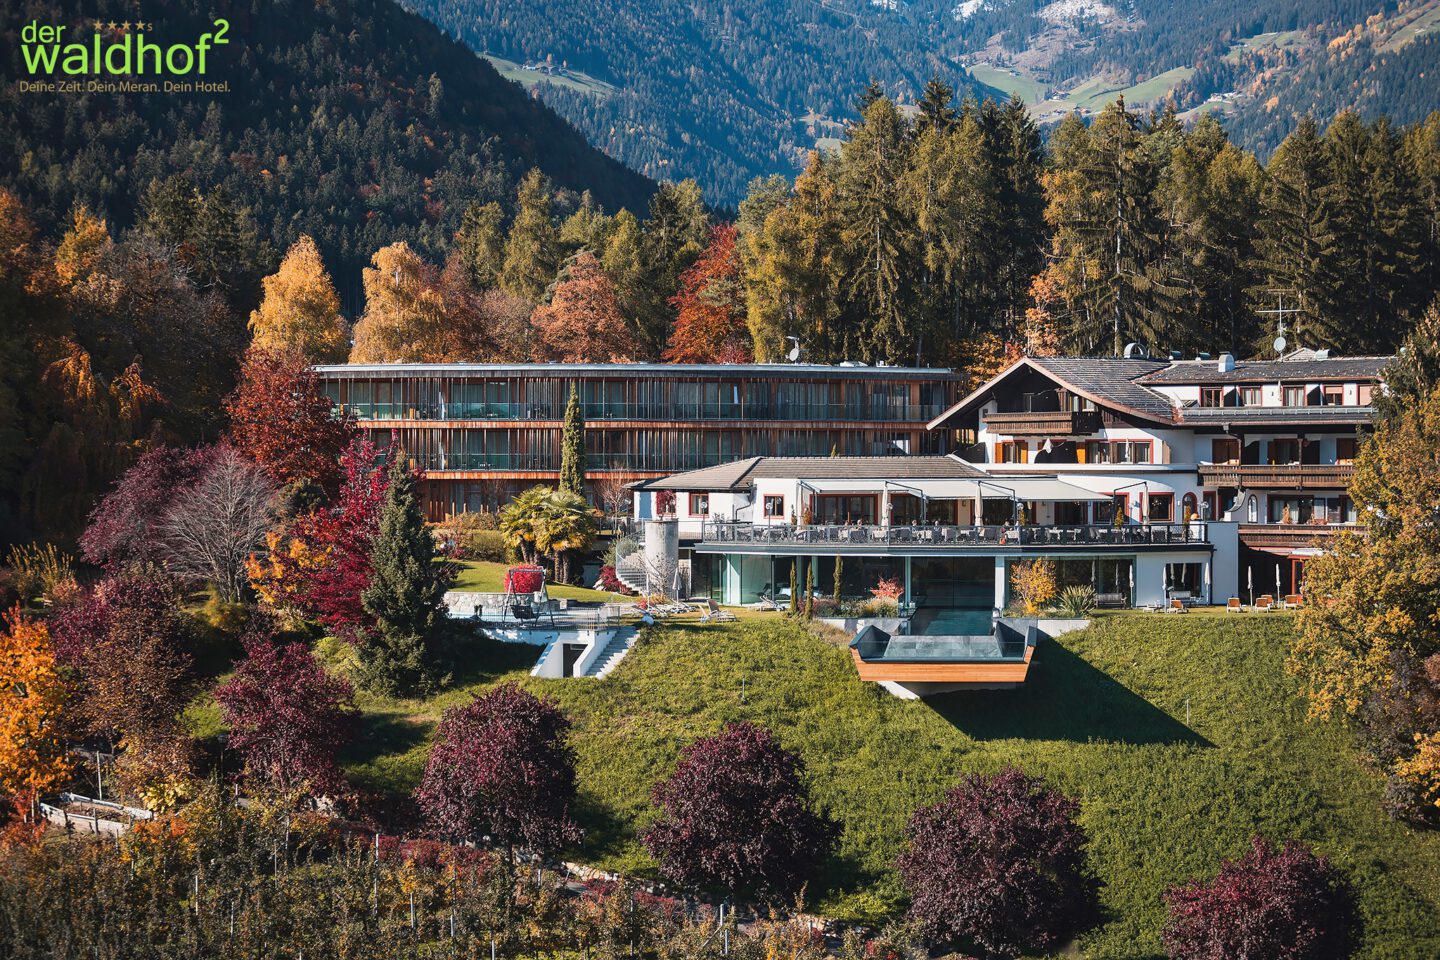 Der Waldhof meran südtirol hotels